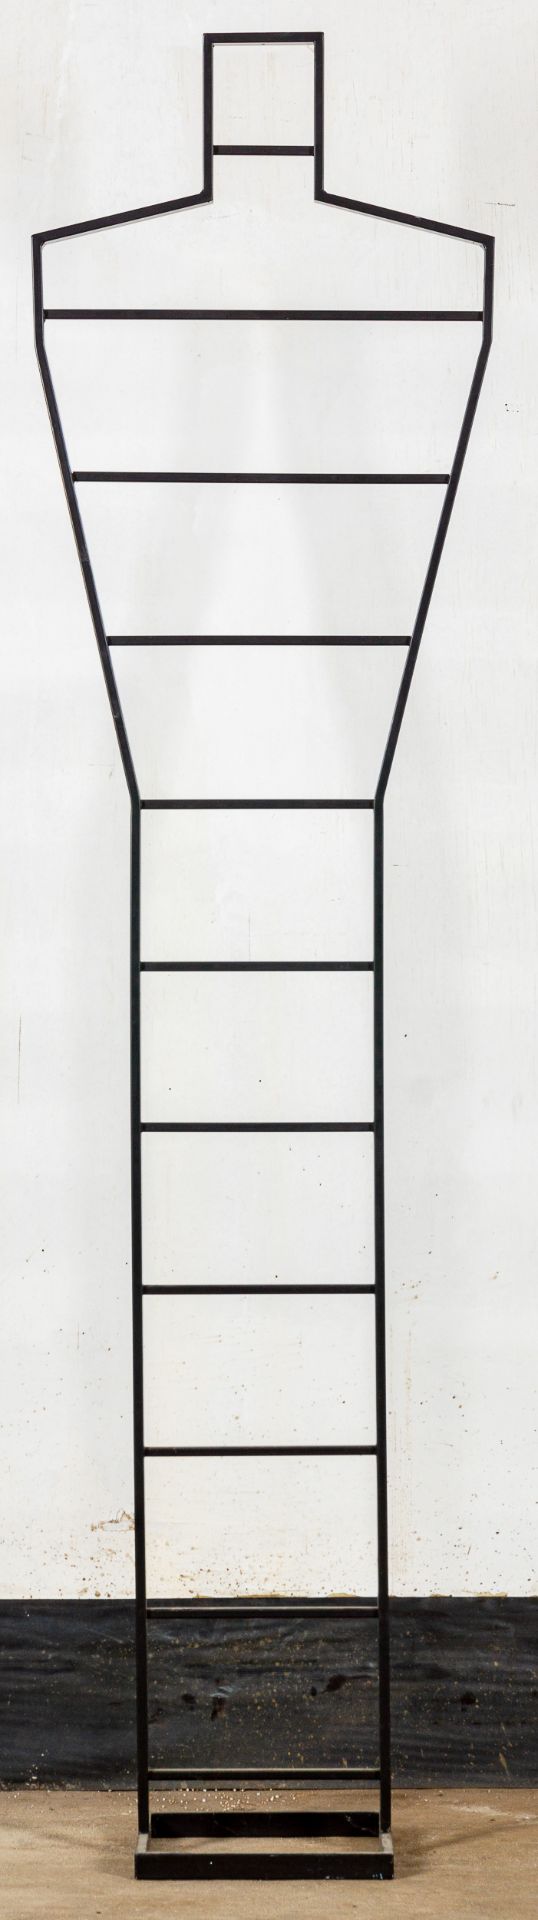 Kleiderständer, mattschwarz lackiertes Metallgestell, 1980/90er Jahre, Höhe ca. 181 cm. Guter Erhal